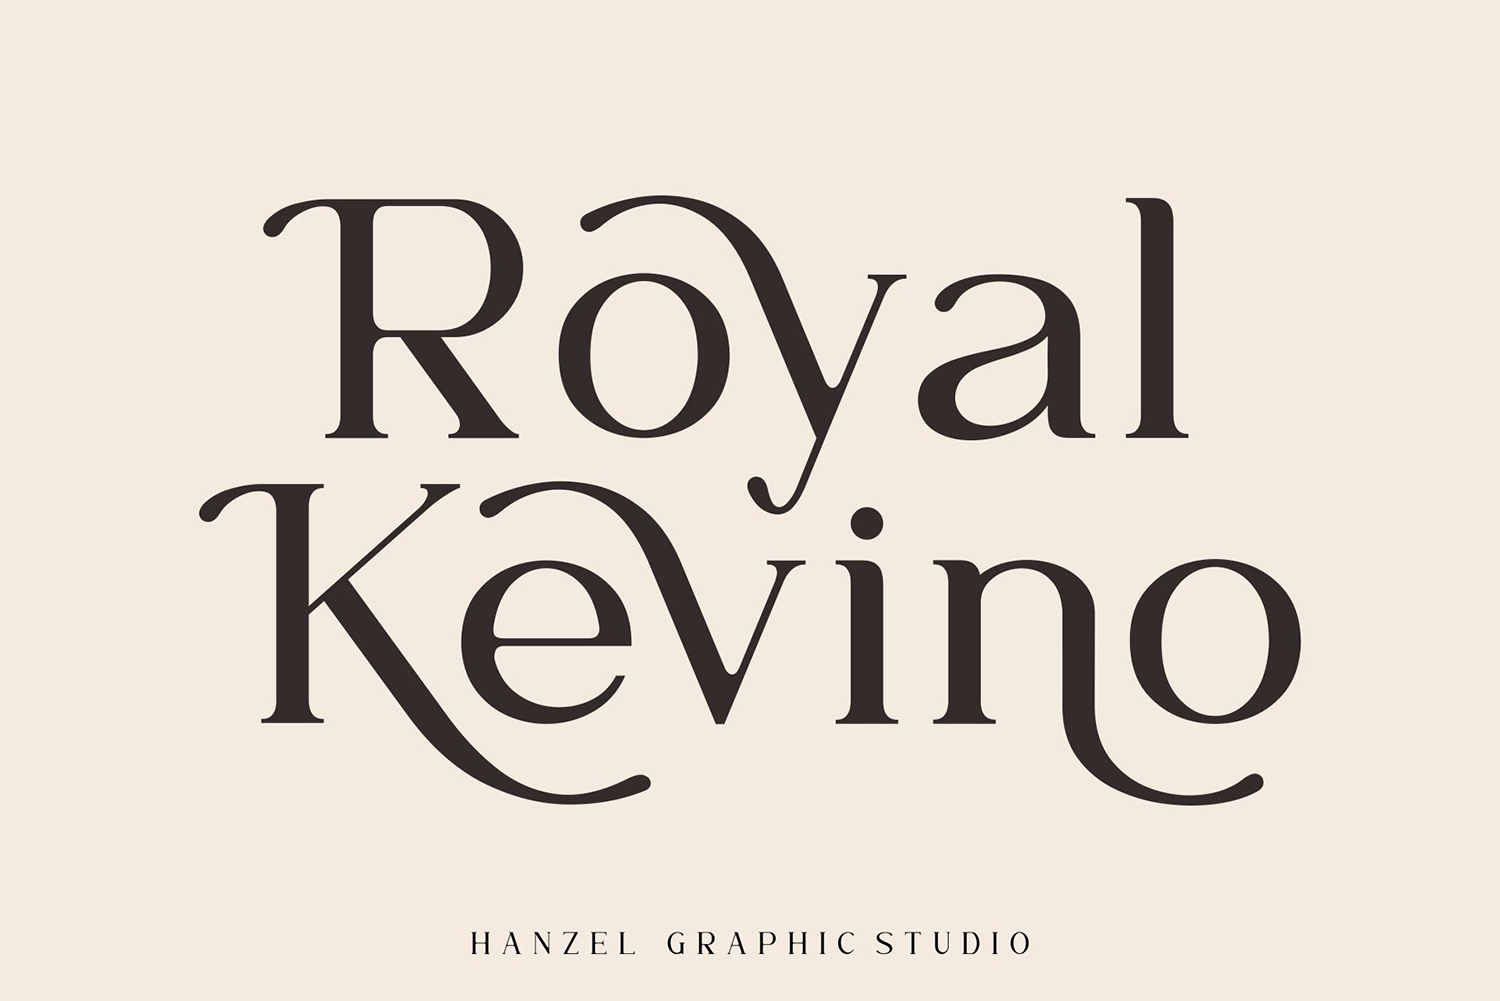 Royal Kevino Free Font